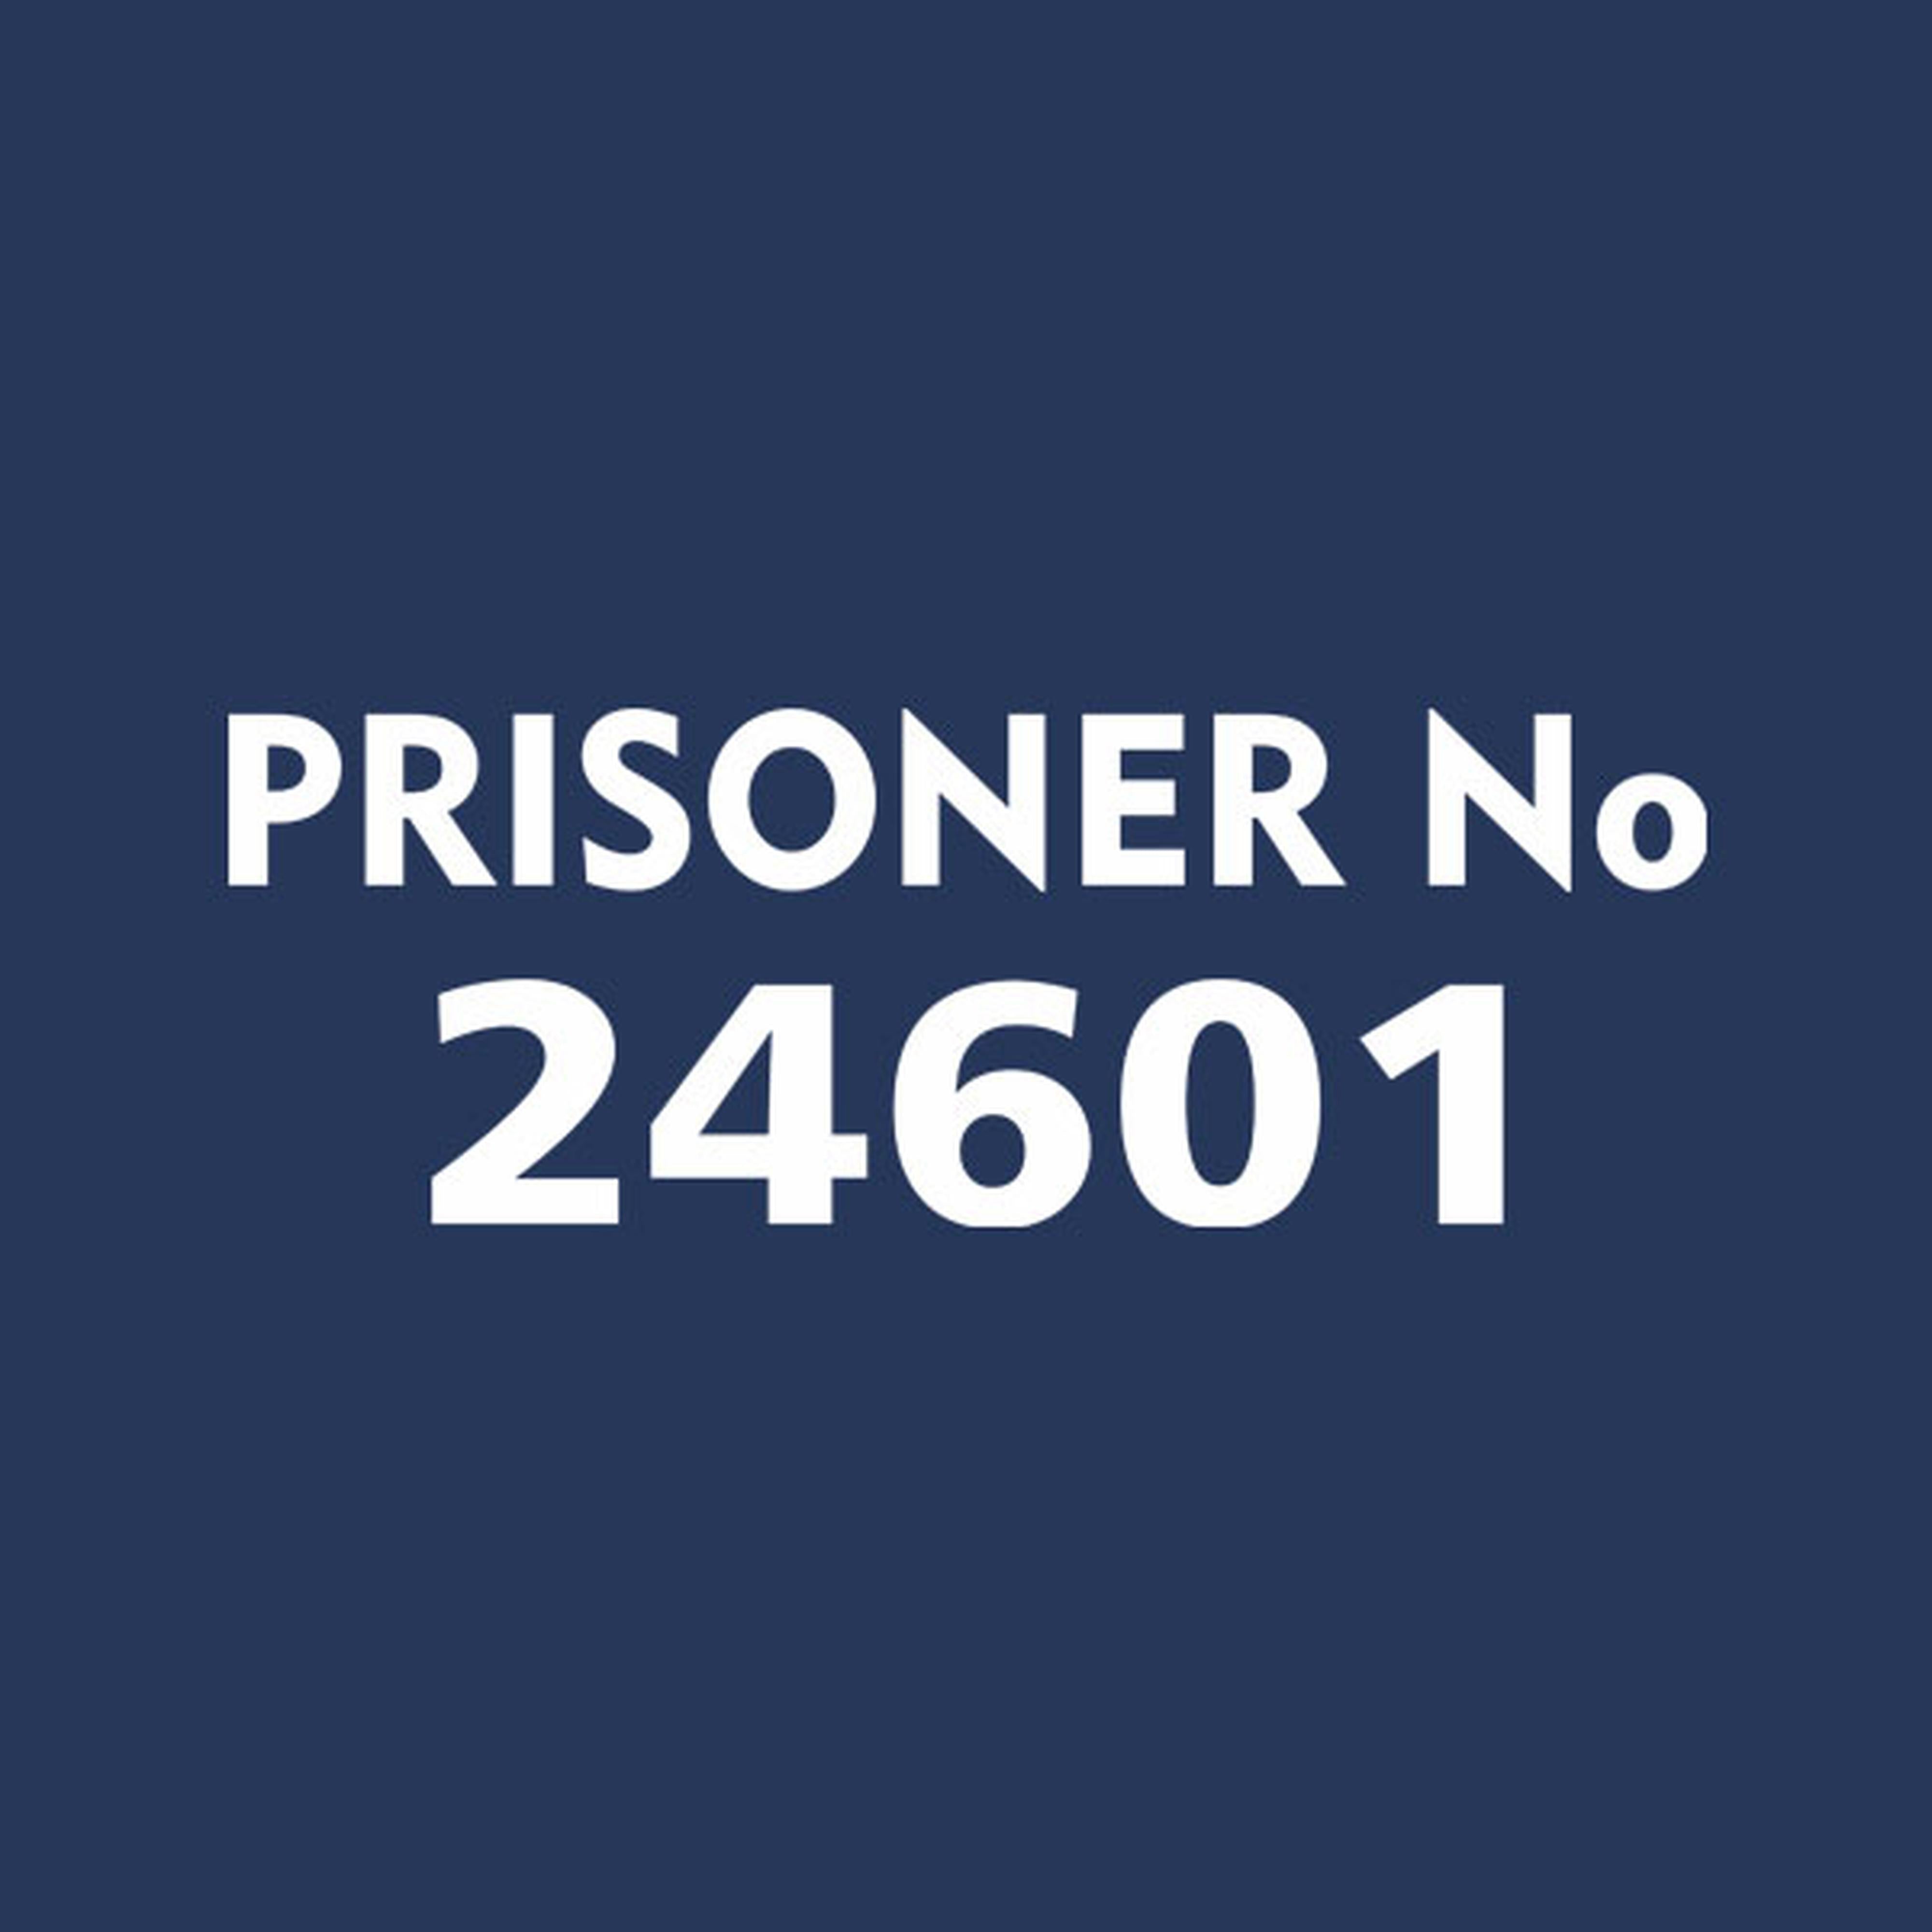 Prisoner #24601 - T-shirt